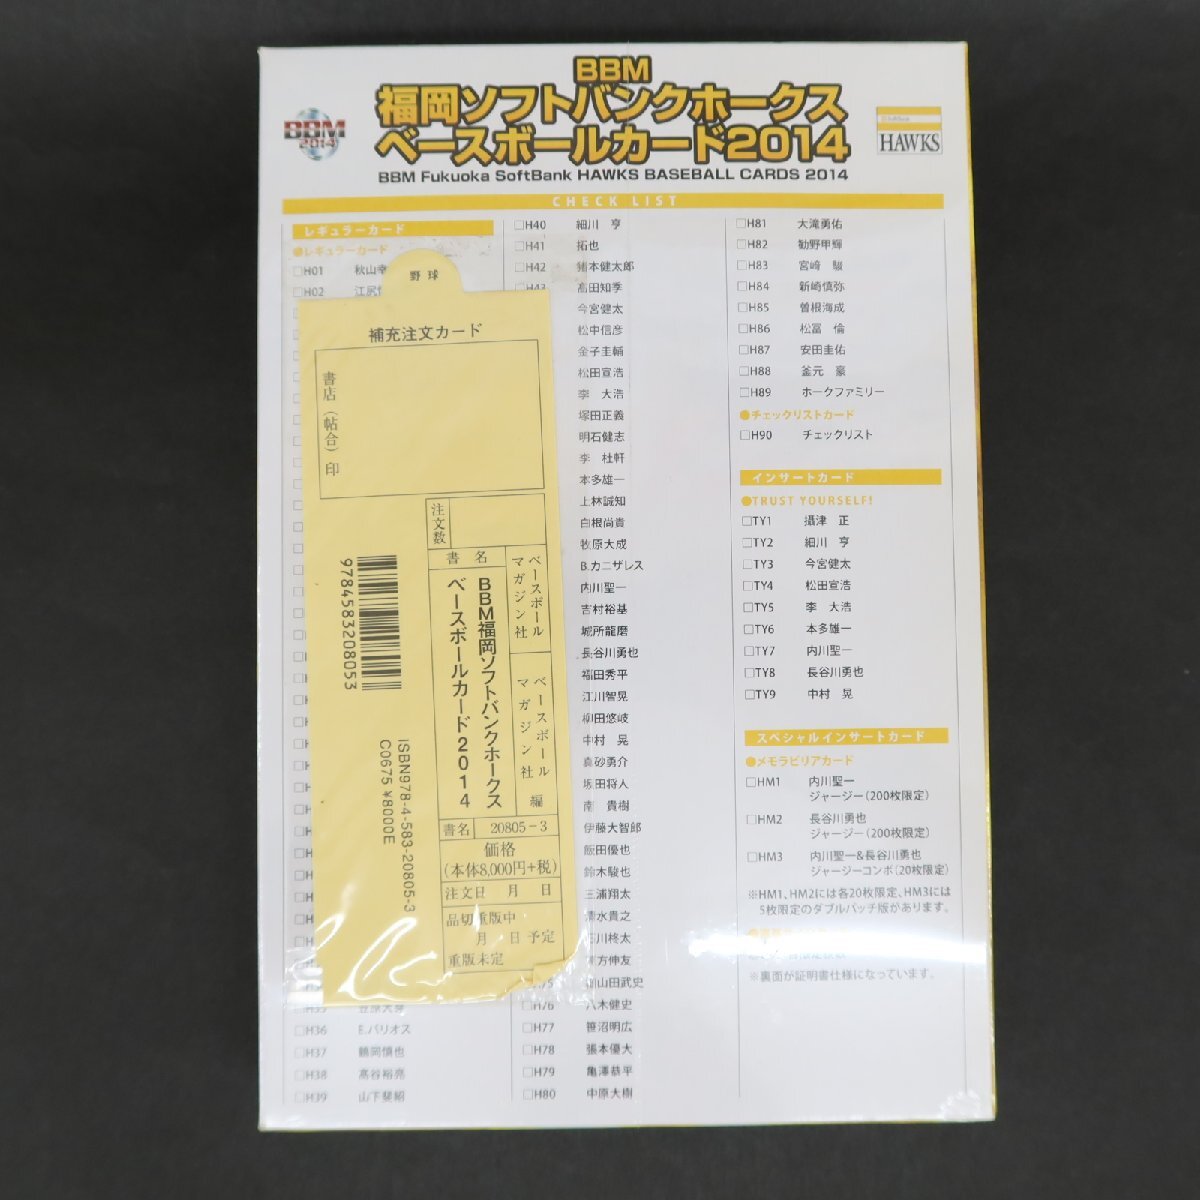 【ya0465】 BBM 福岡ソフトバンクホークス ベースボールカード2014 トレカ 未開封ボックスの画像2